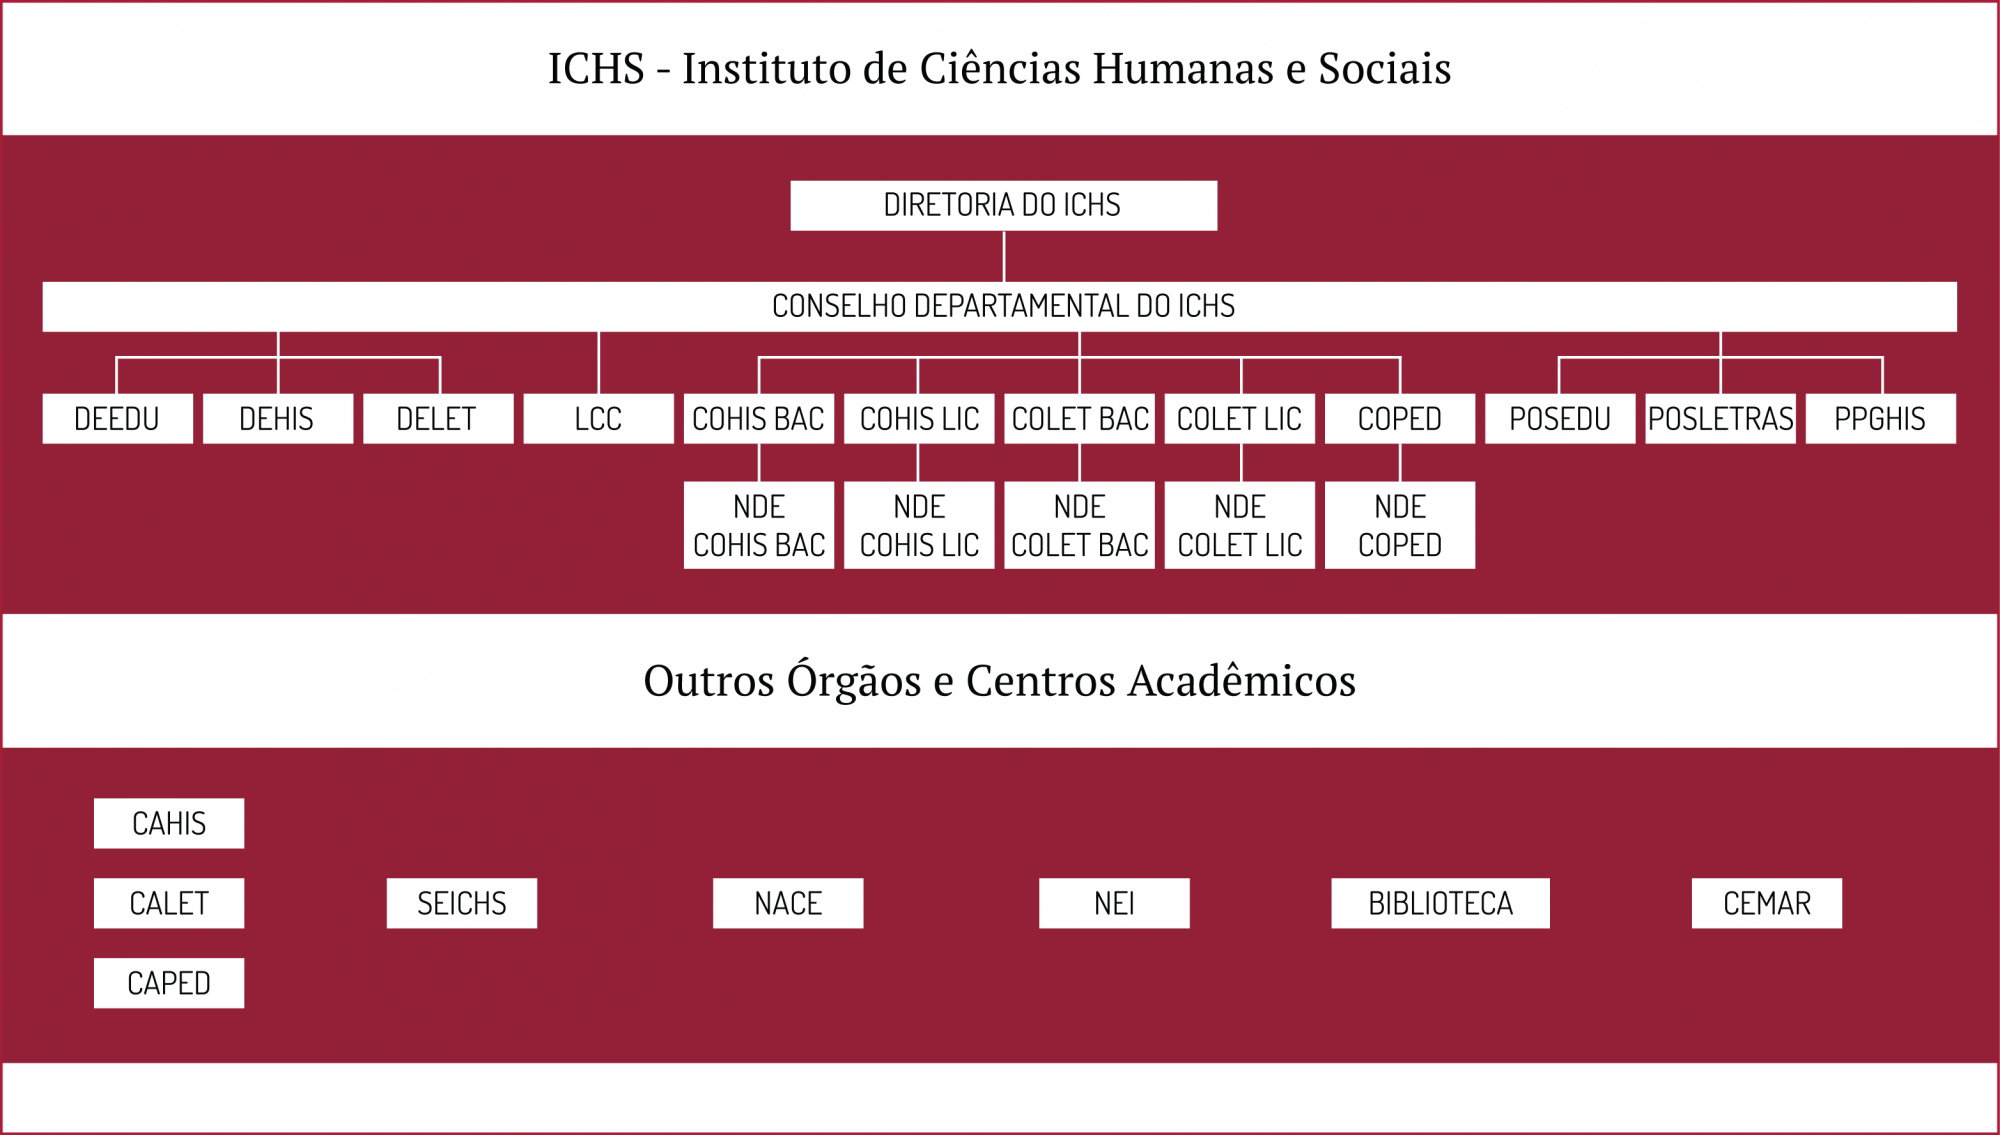 Estrutura Administrativa do ICHS